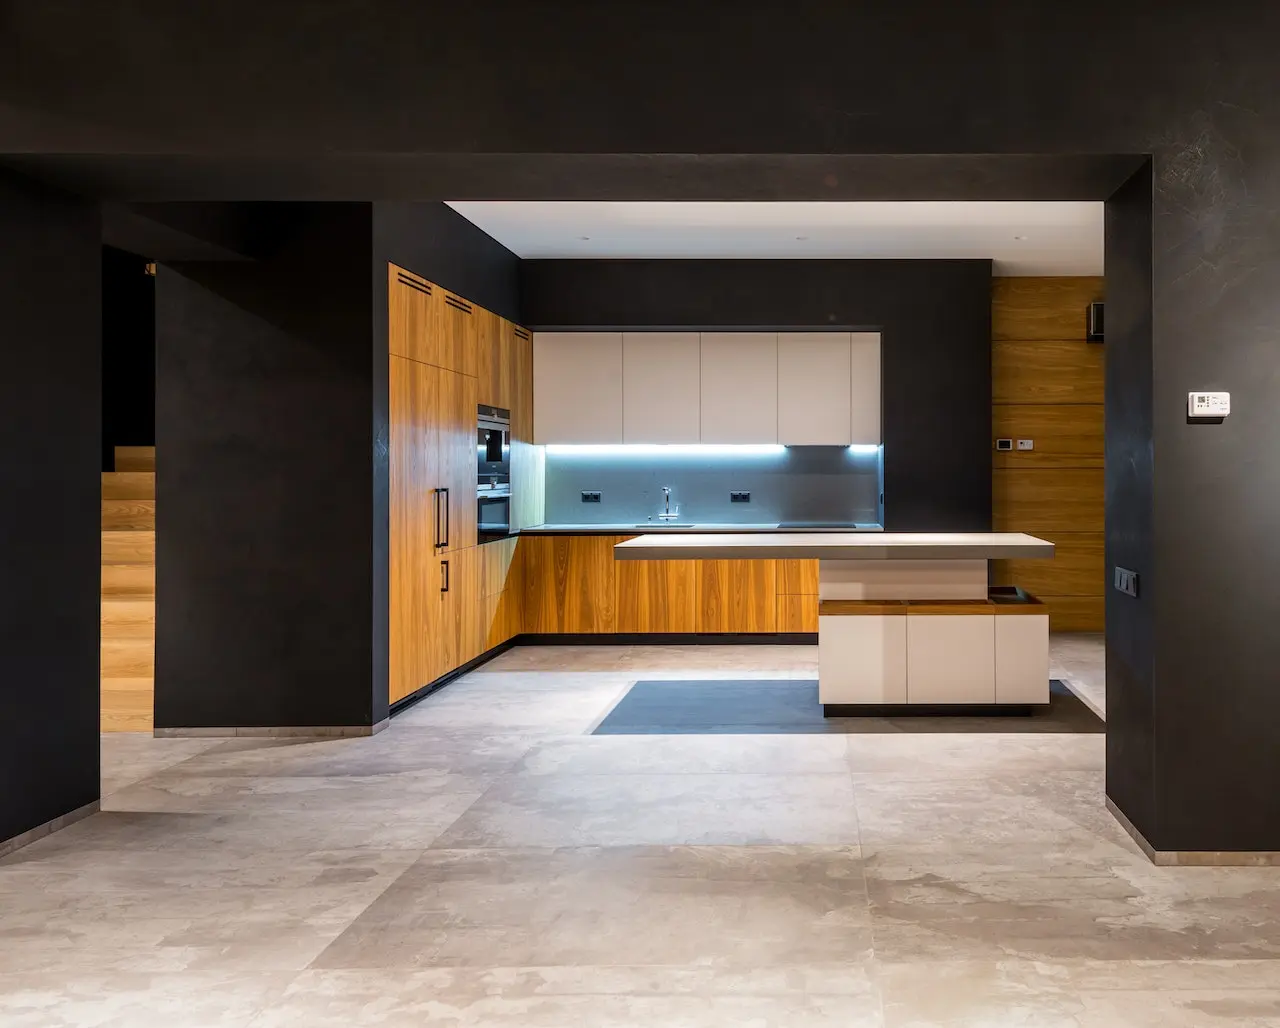 آشپزخانه ای که به سبک جدید با طرح چوب میباشد و کف پوش سنگی نیز روی زمین است